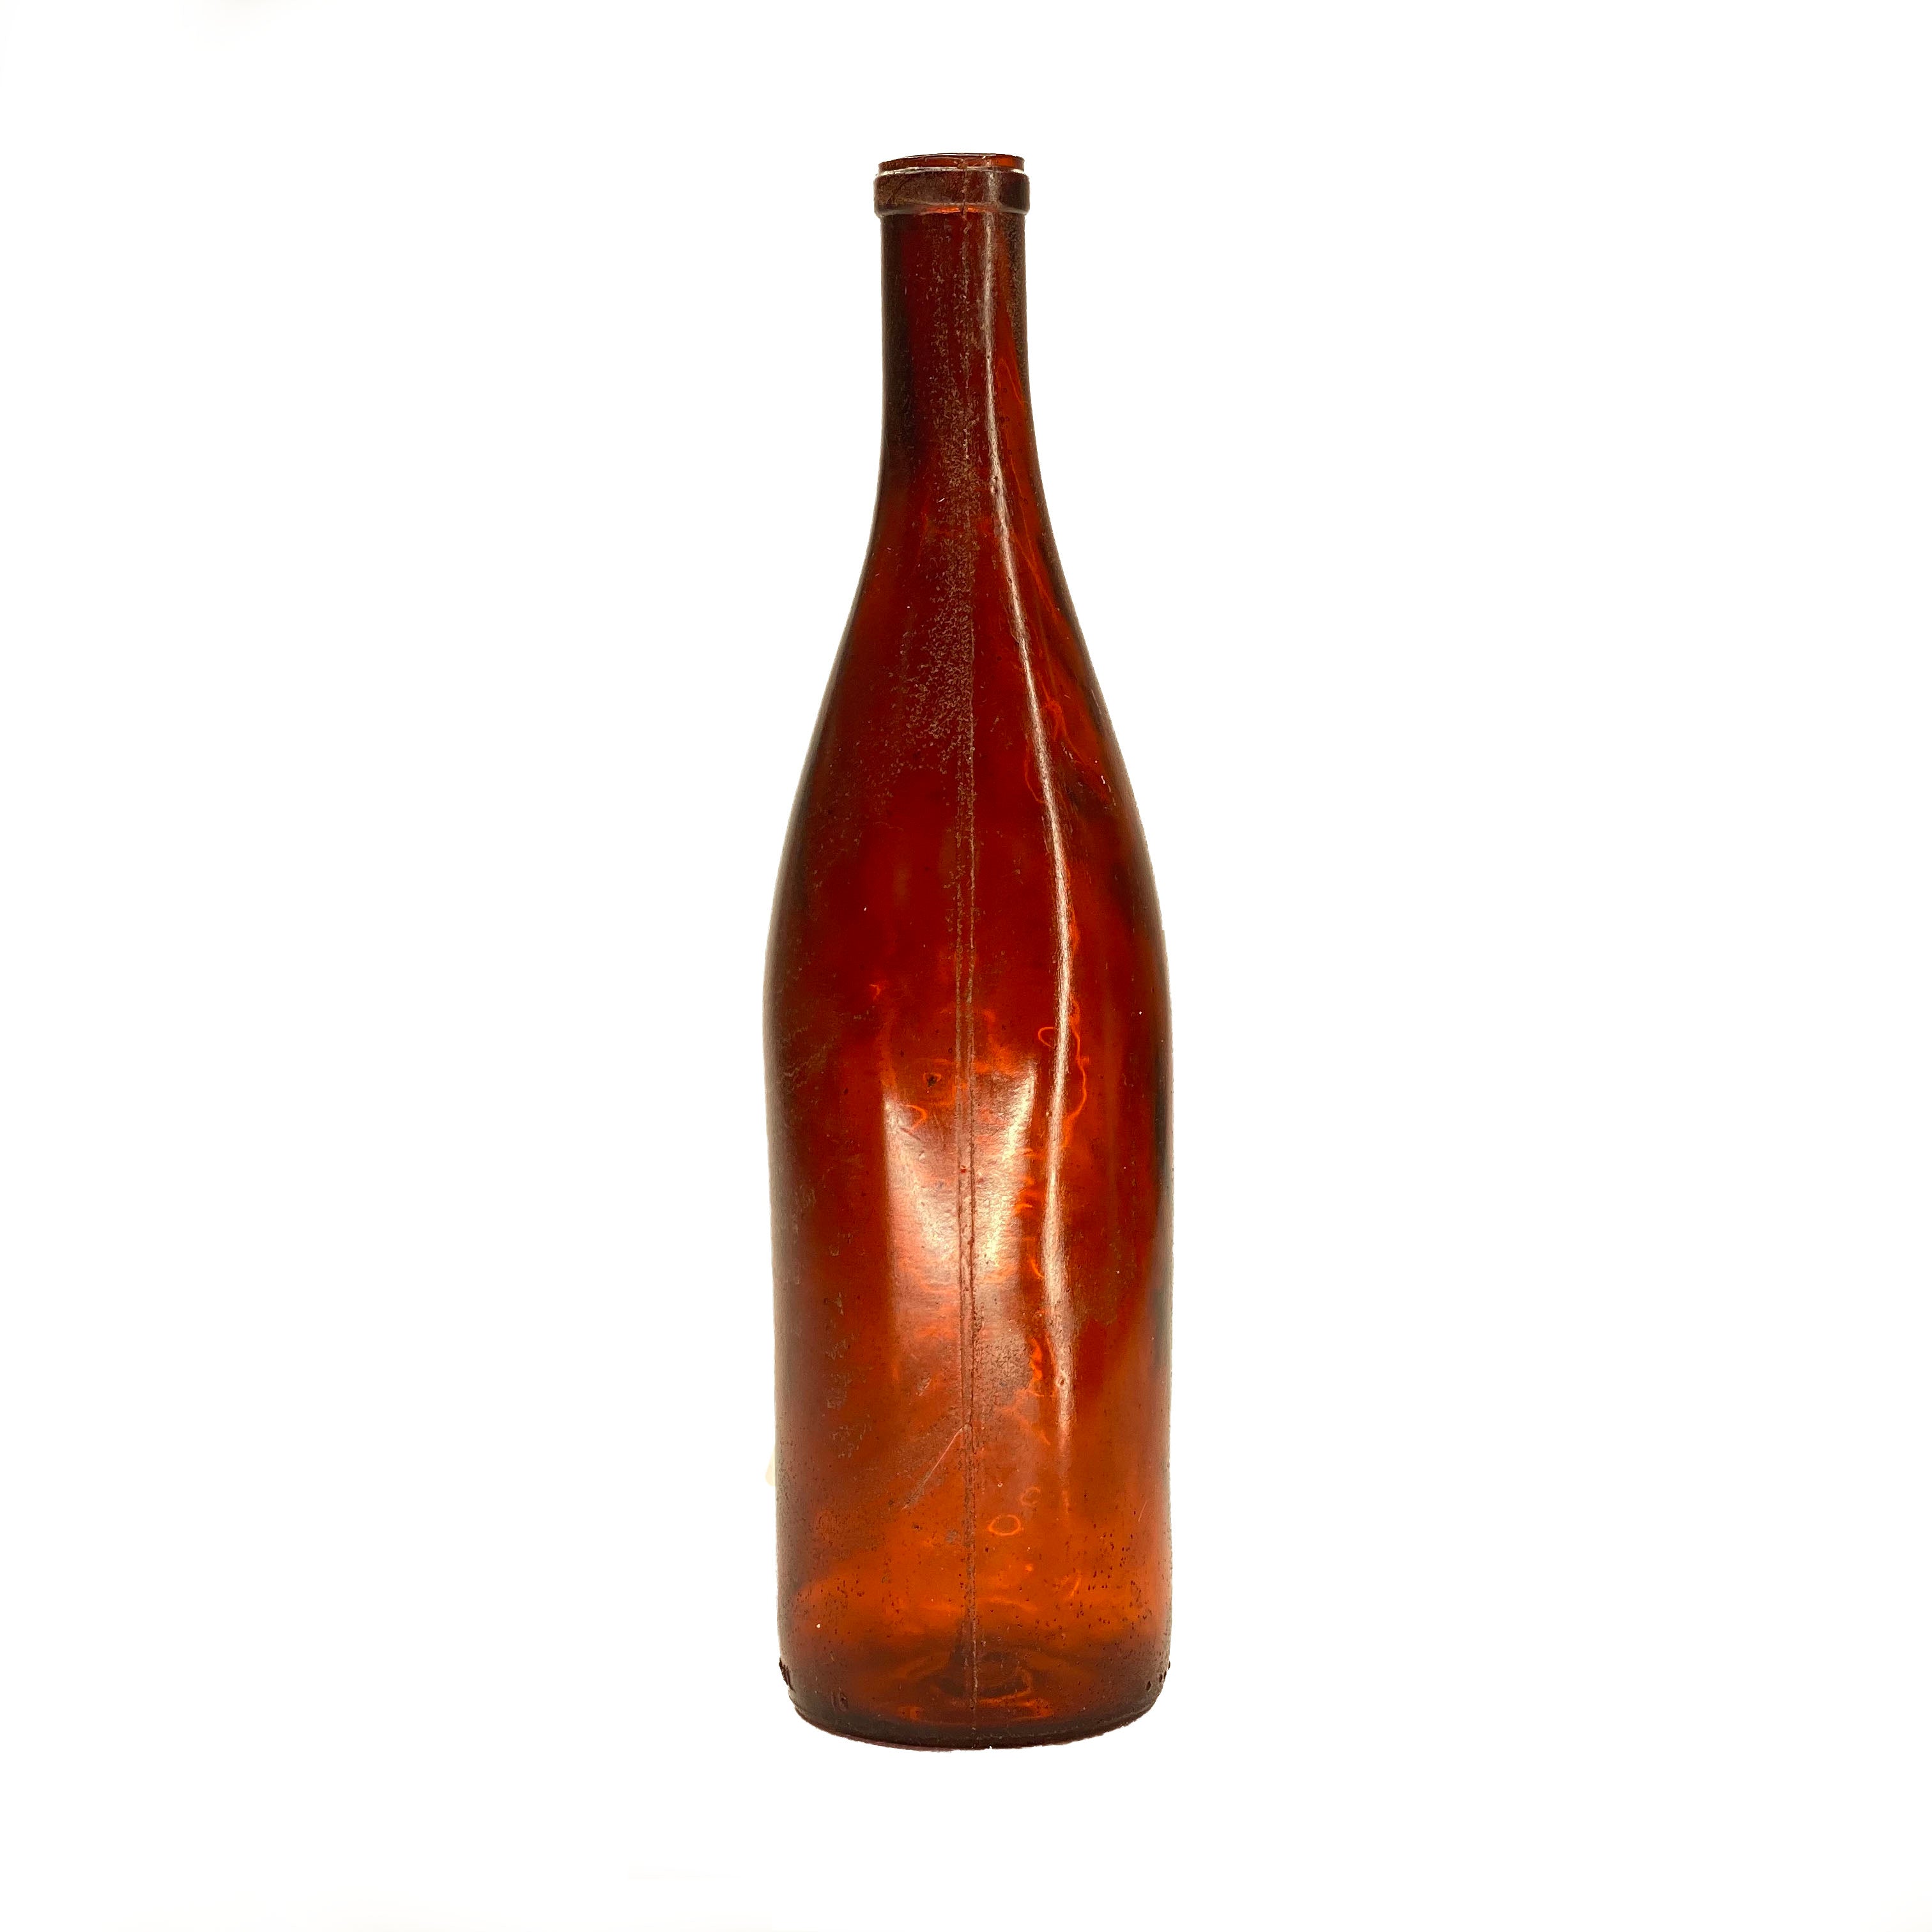 SMASHProps Breakaway White Wine Bottle Prop - AMBER BROWN translucent - Amber Brown Translucent